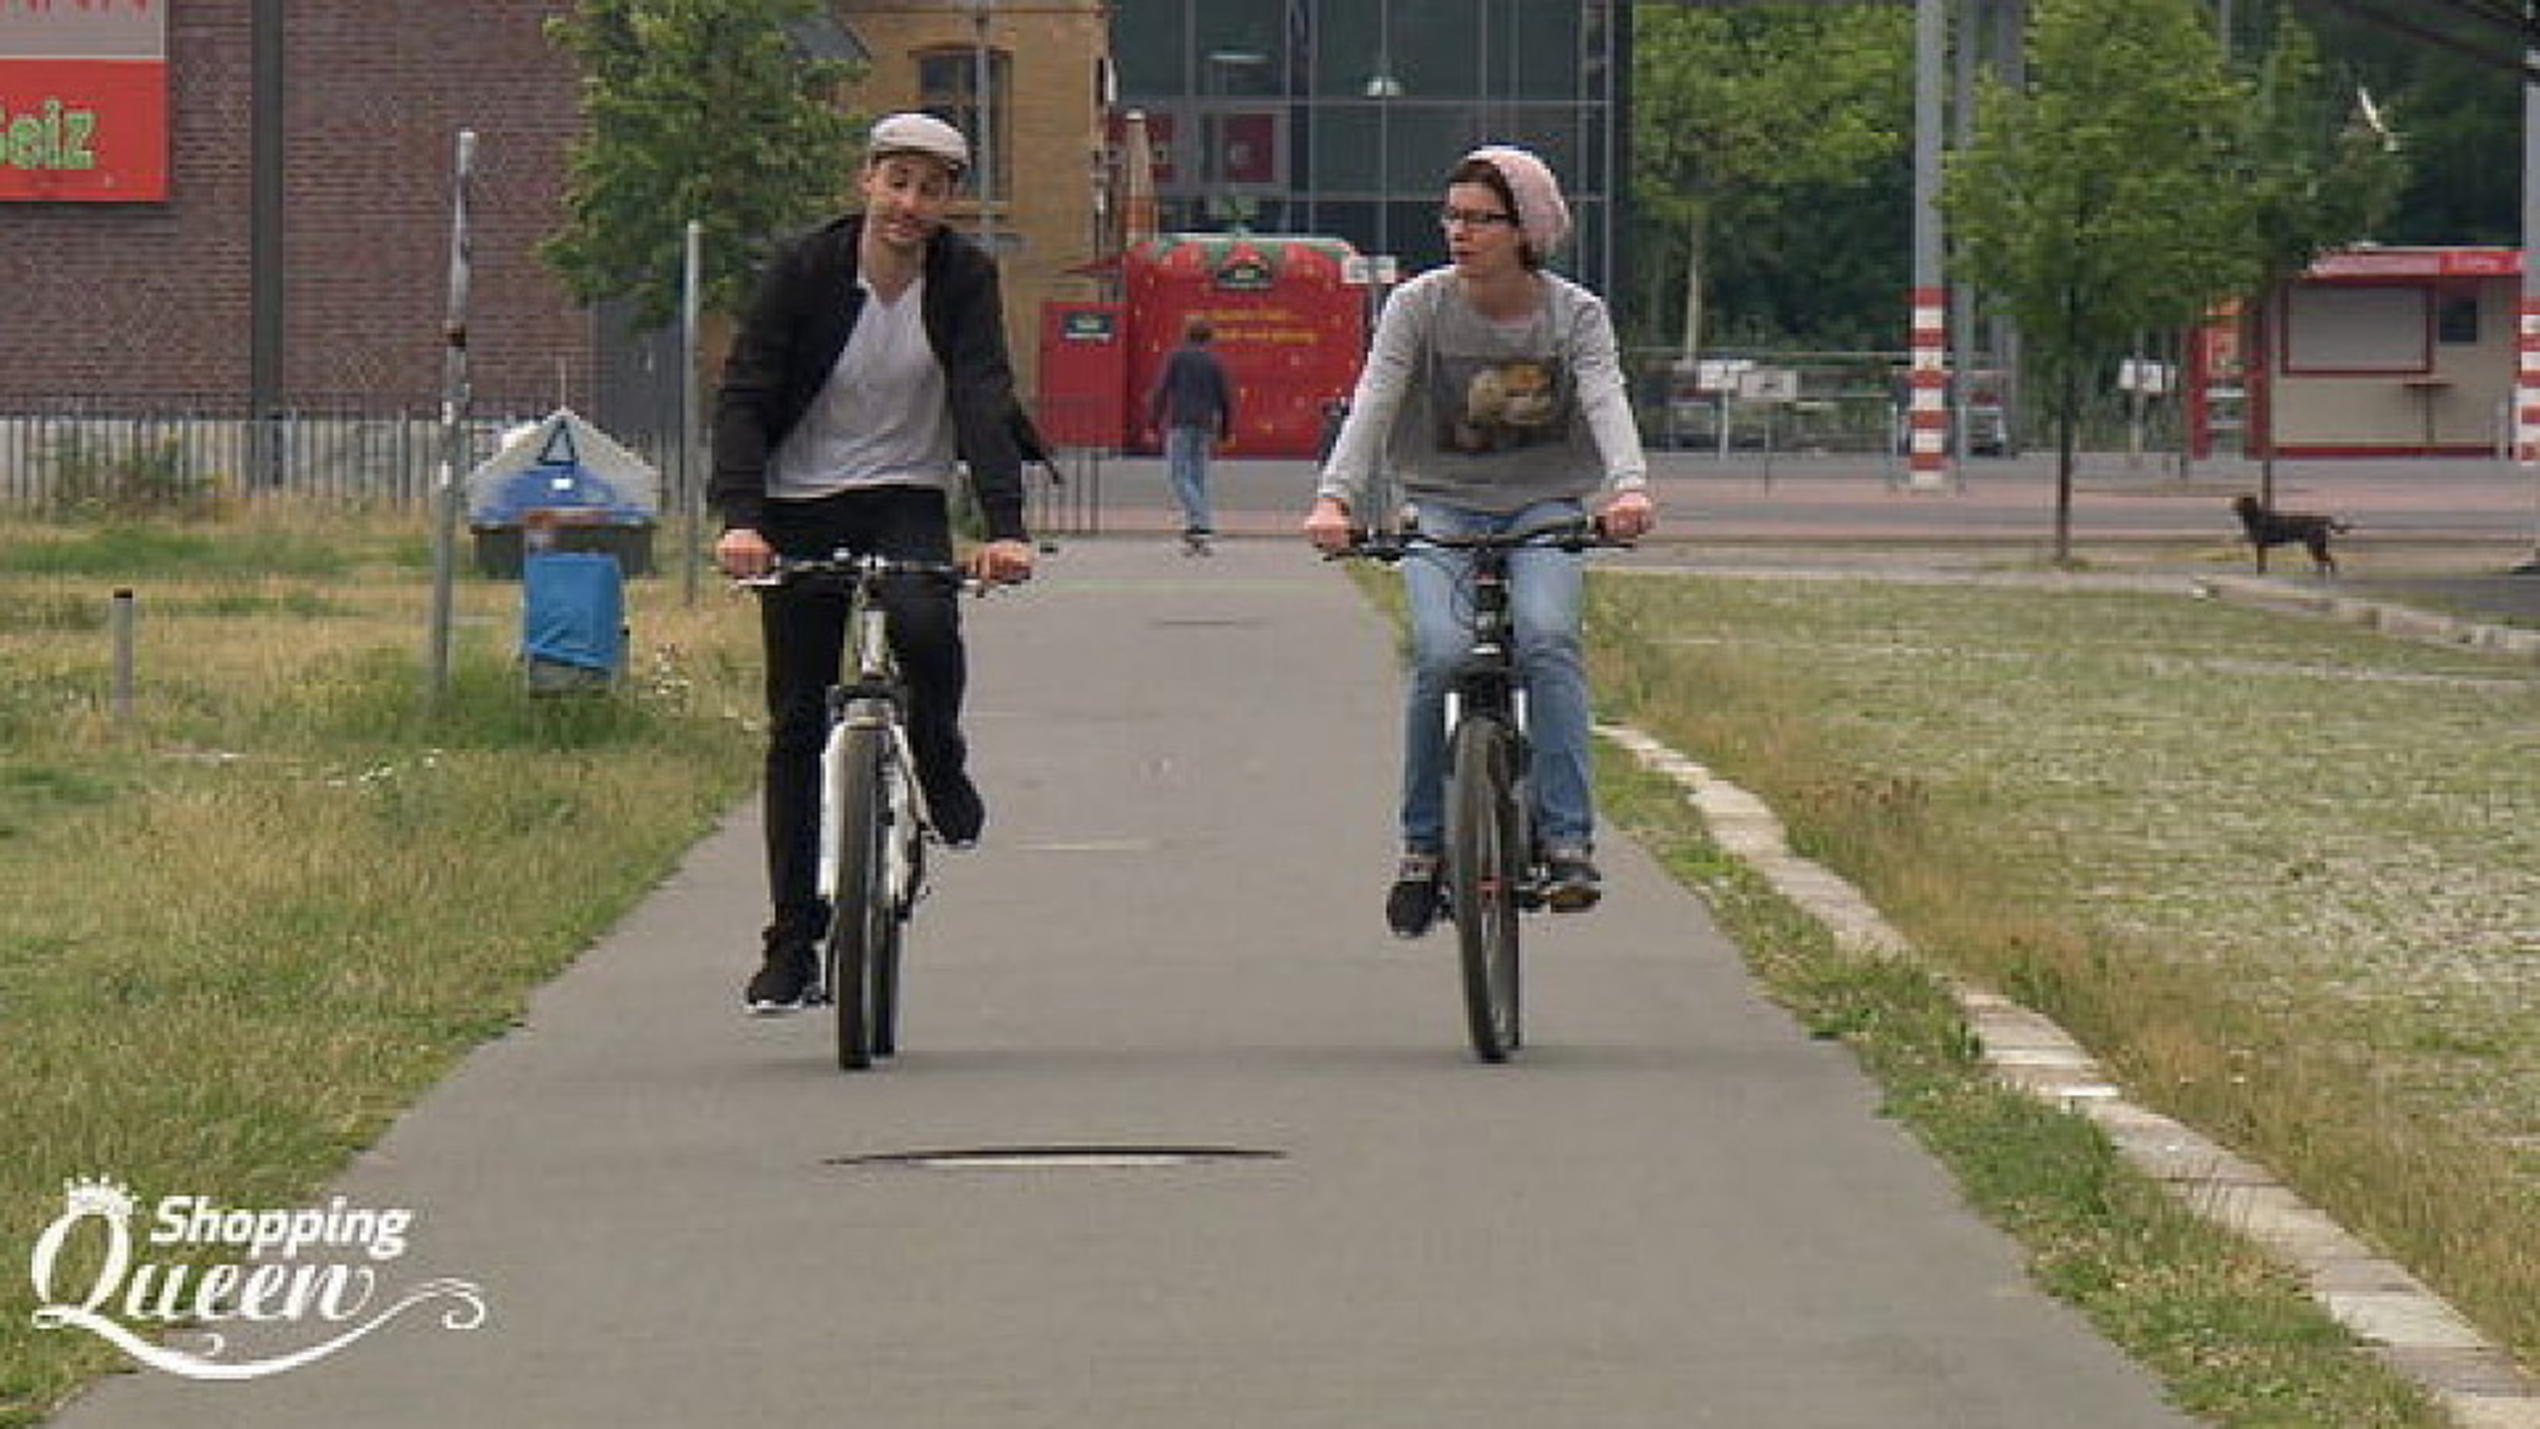 Shopping Queen: Mia und ihr Freund machen regelmäßig Fahrradtouren